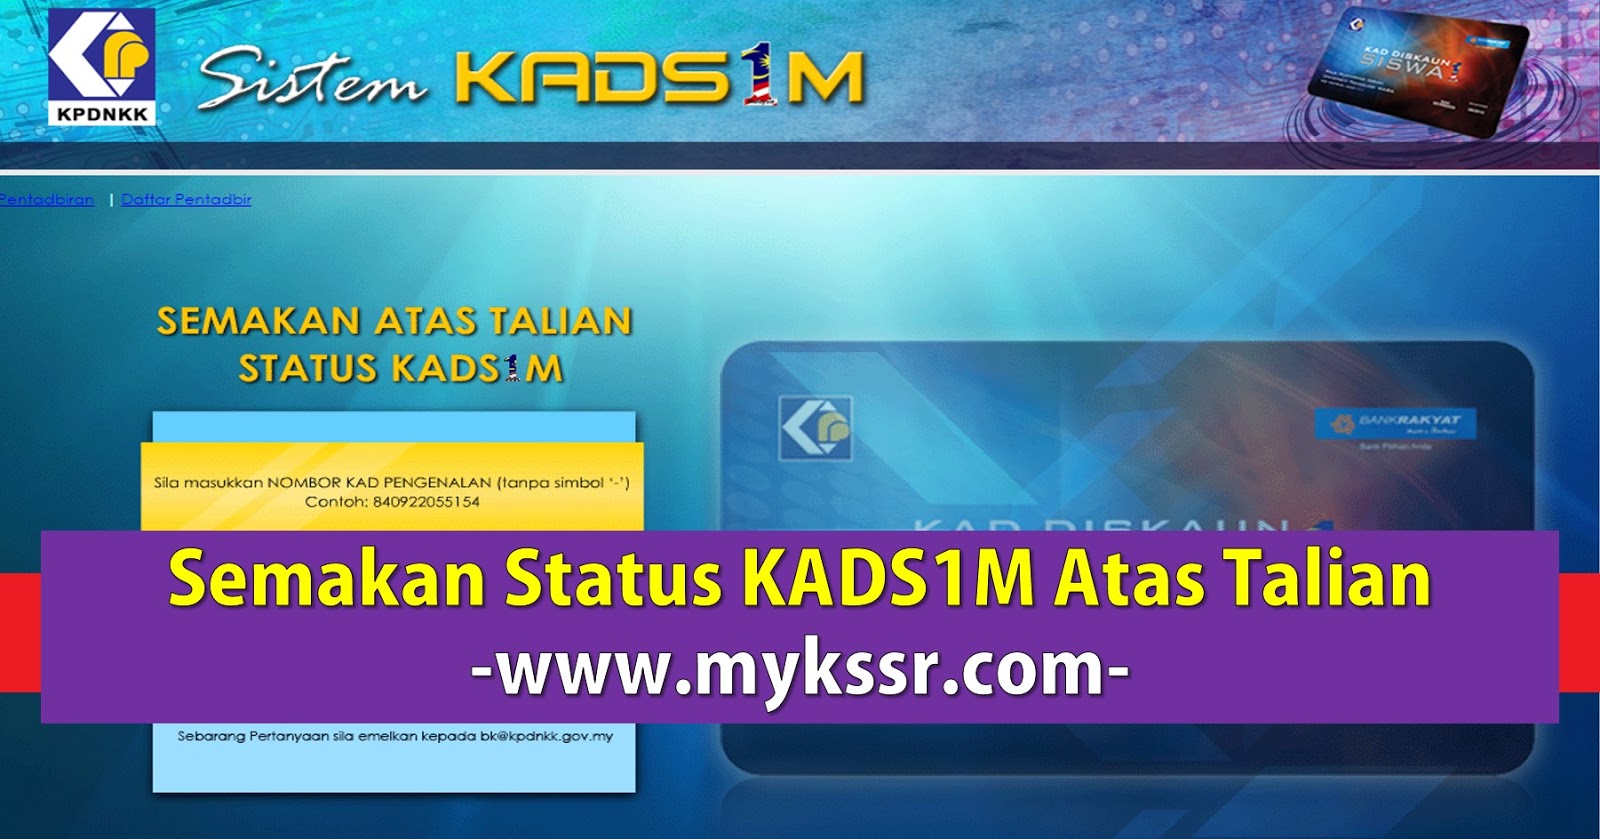 Semakan Status KADS1M Atas Talian - Mykssr.com